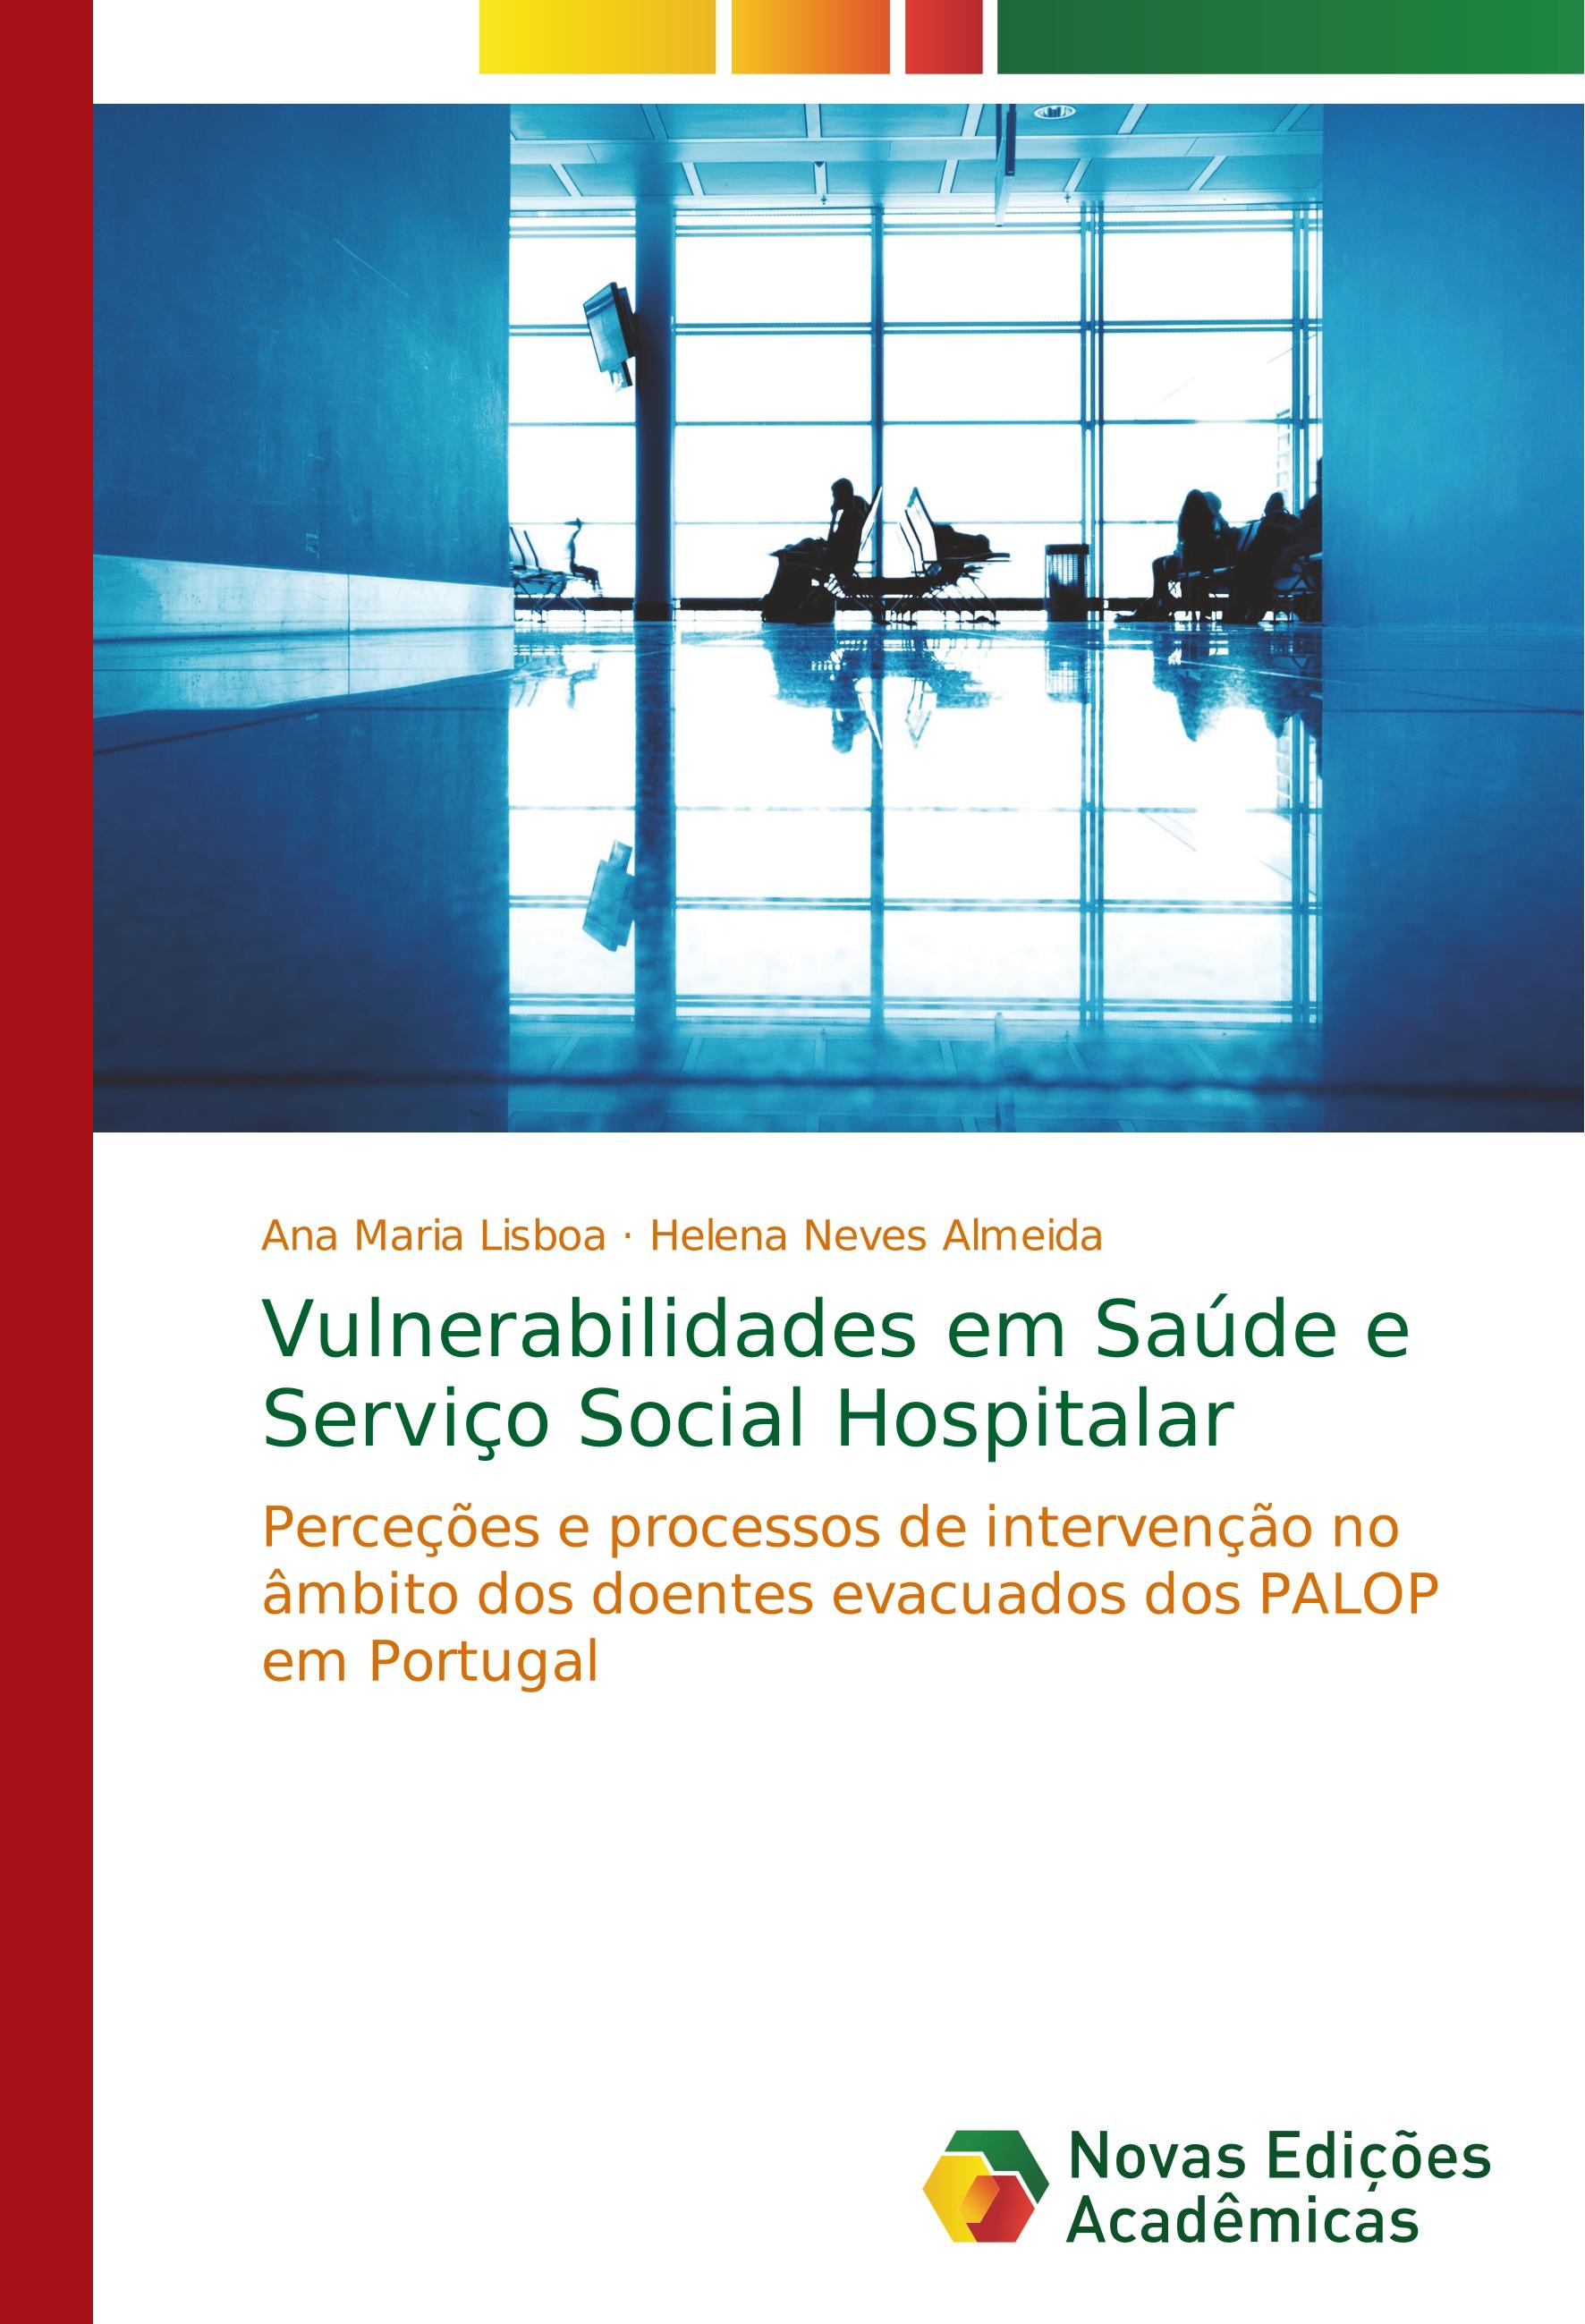 Vulnerabilidades em Saúde e Serviço Social Hospitalar - Ana Maria Lisboa Helena Neves Almeida